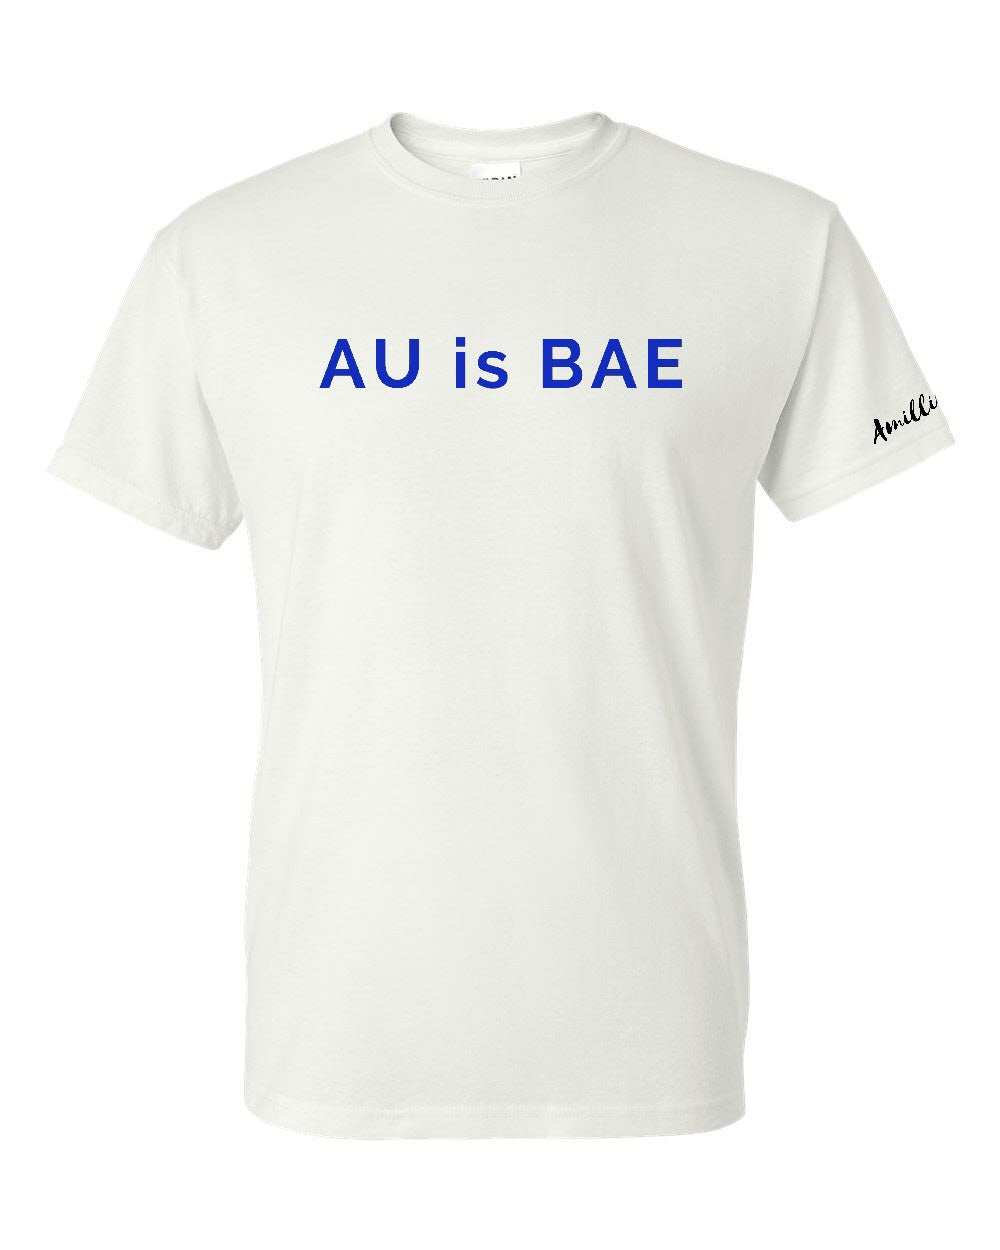 AU is BAE